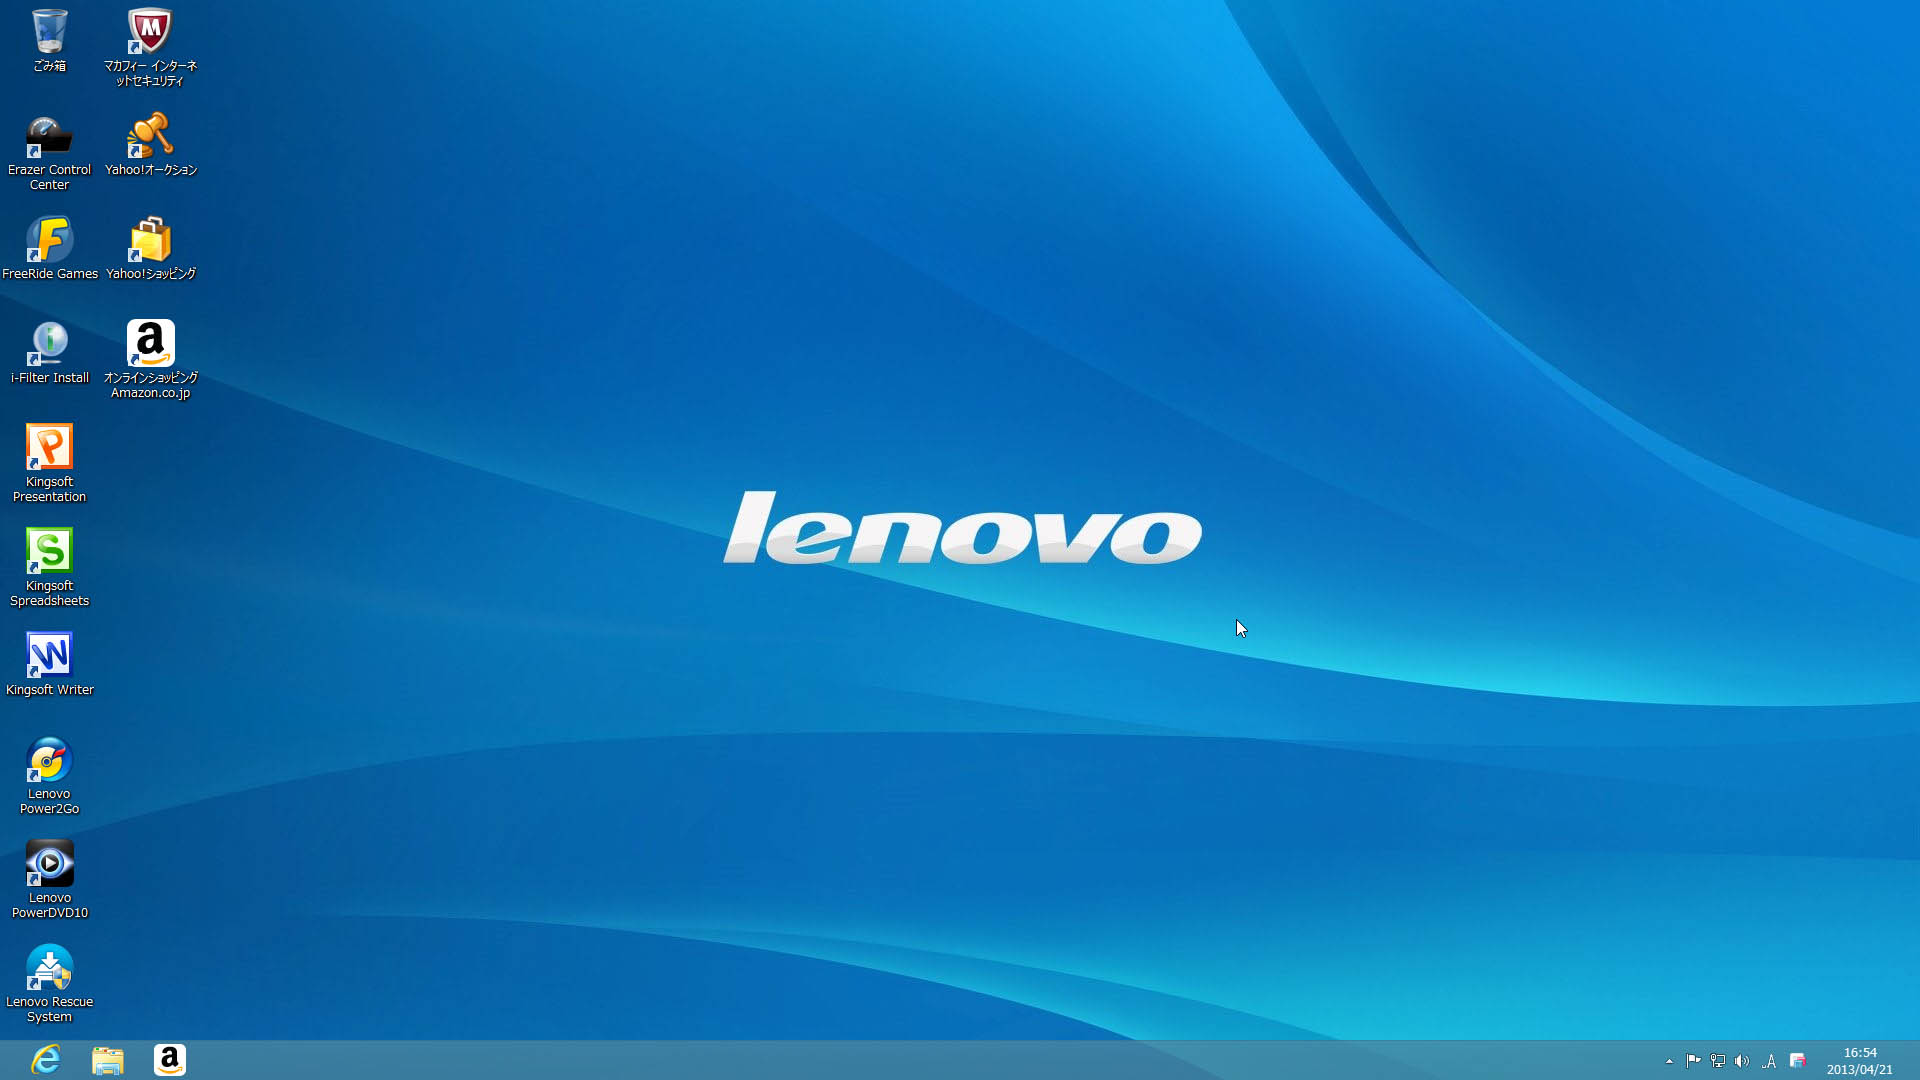 Lenovo Desktop Wallpaper Desk